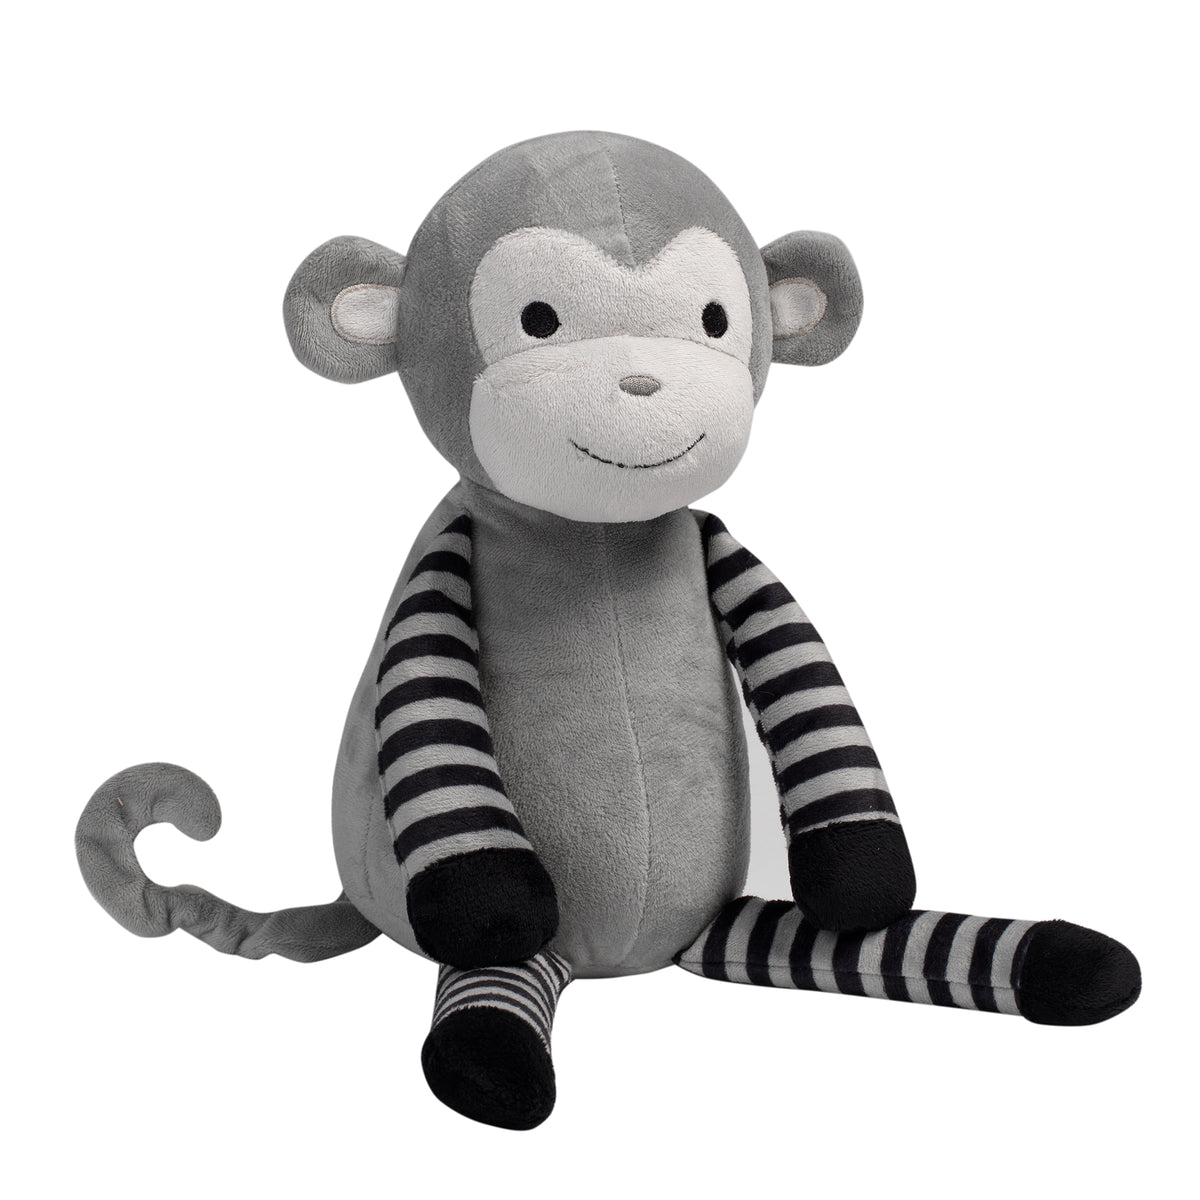 Plush Monkey Stuffed Animal Bingo